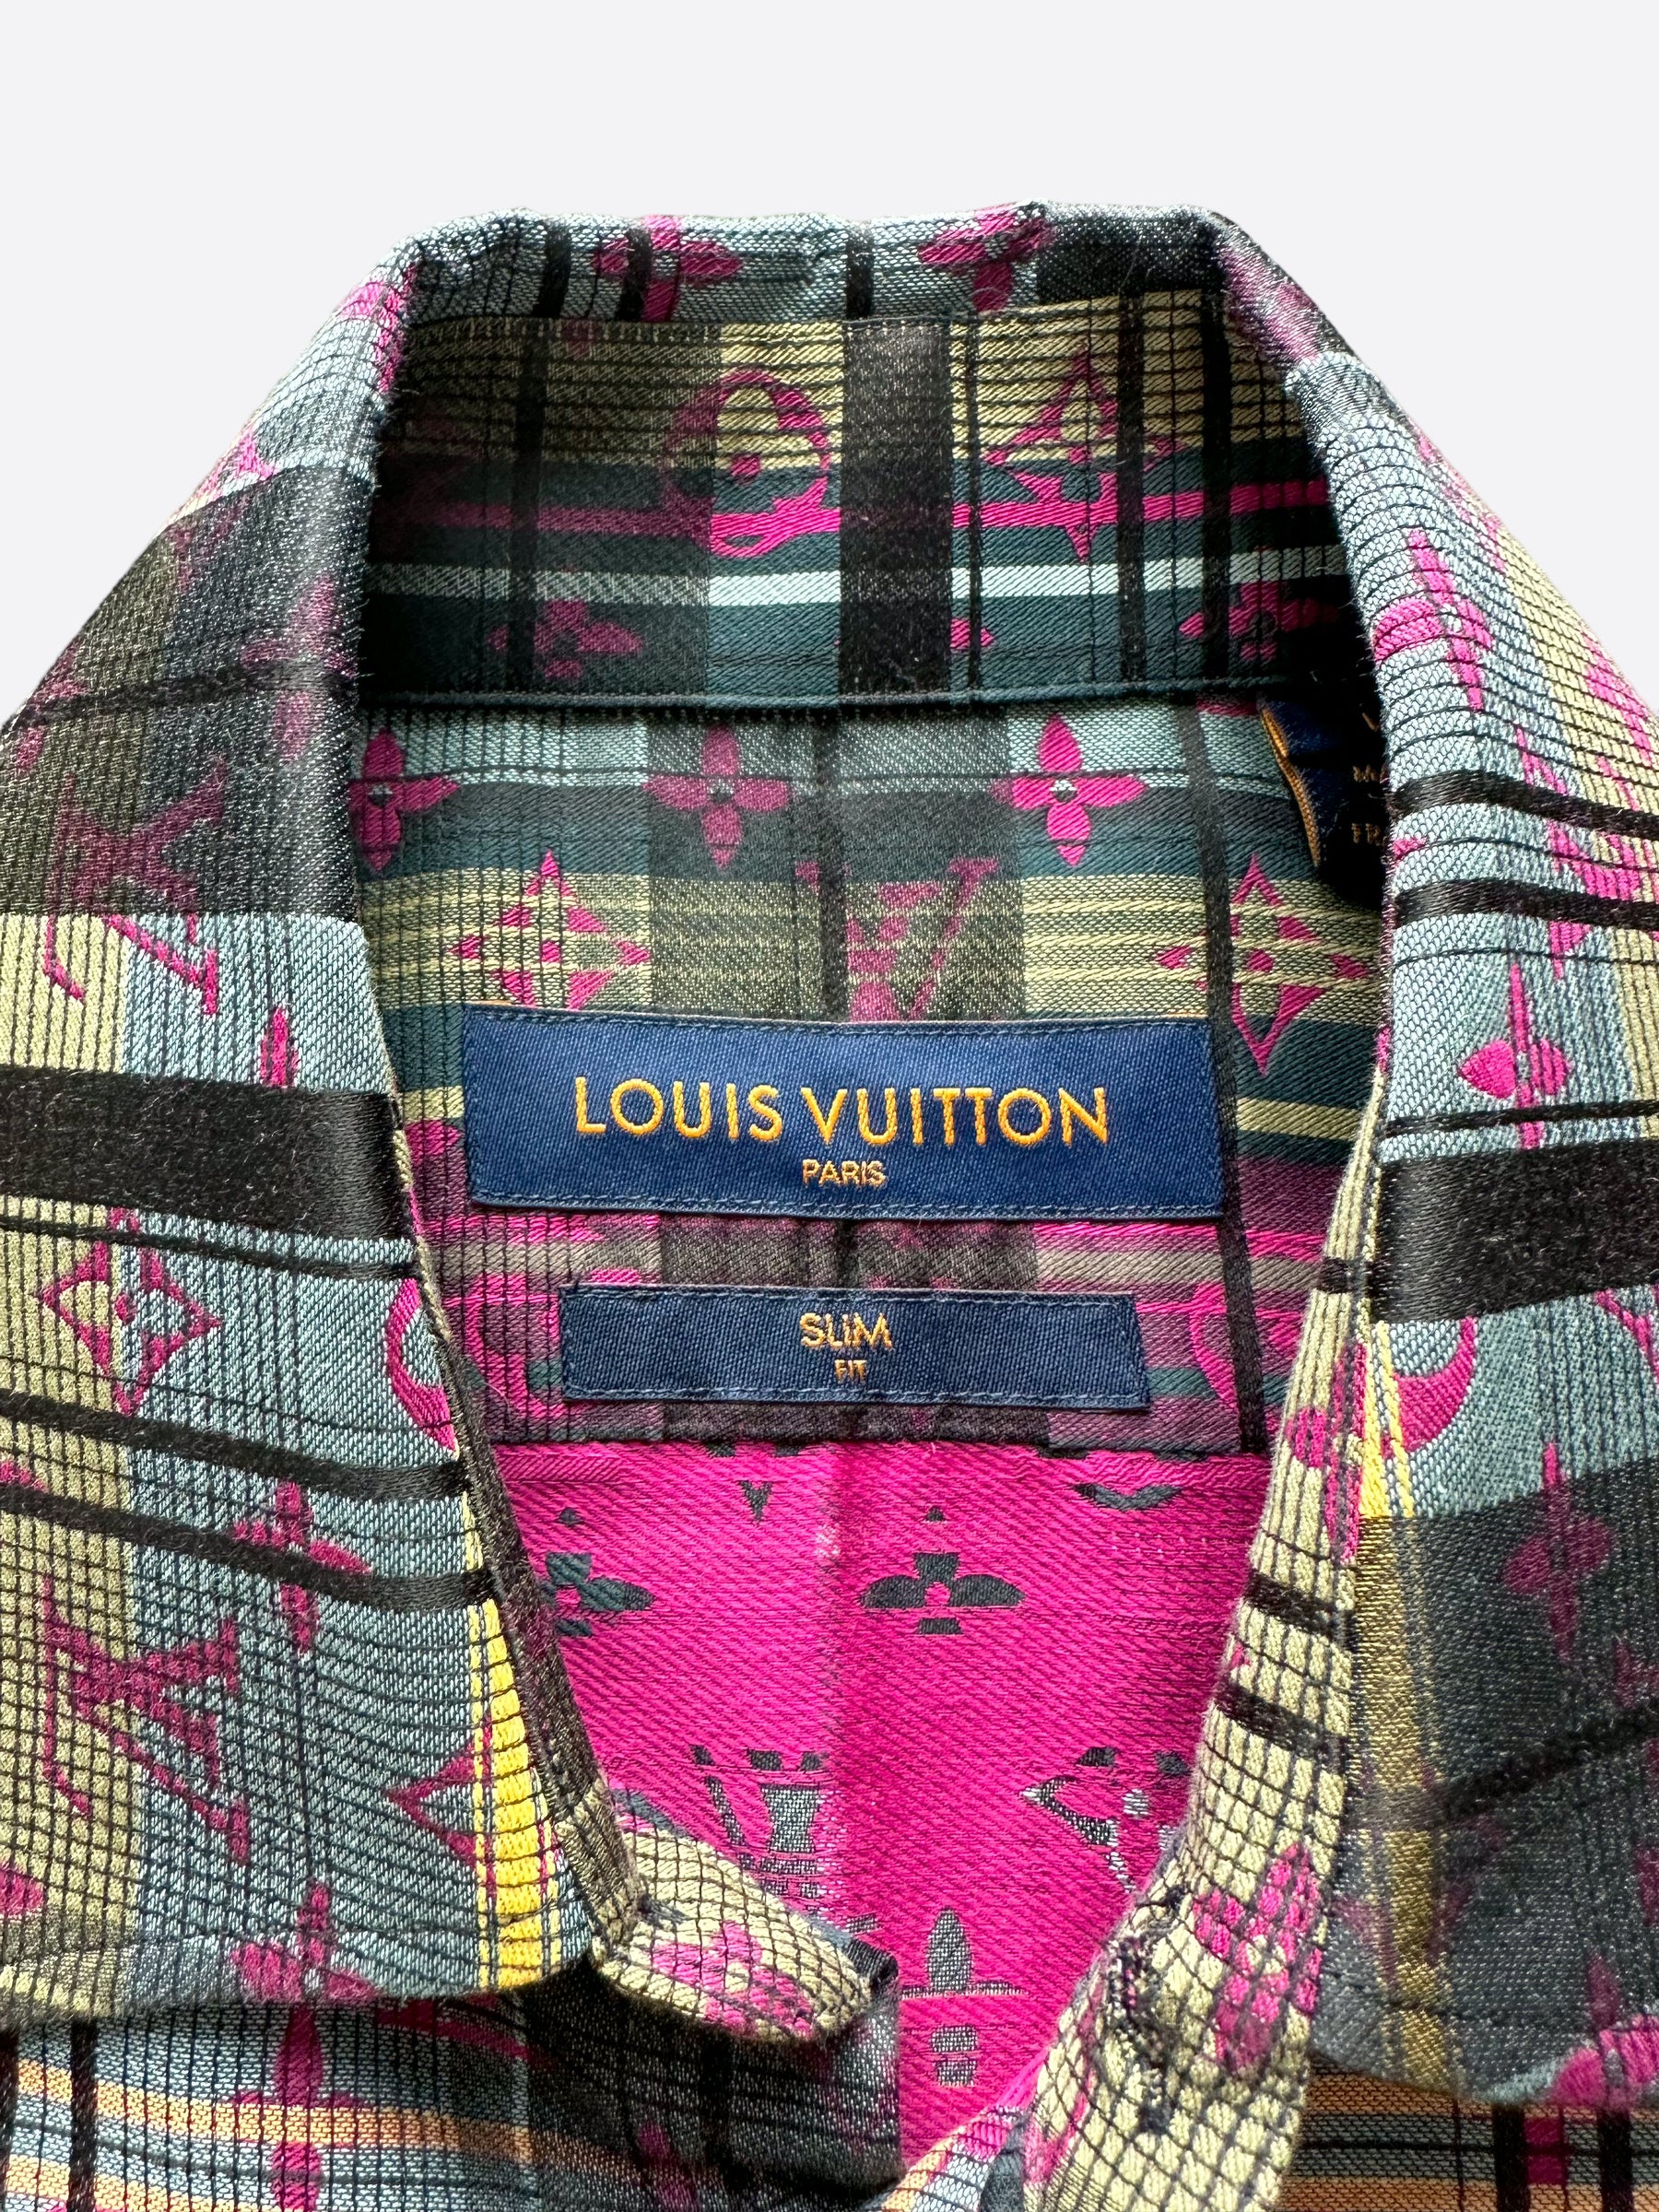 Louis Vuitton Men's Blue Checked Cotton Shirt L Louis Vuitton